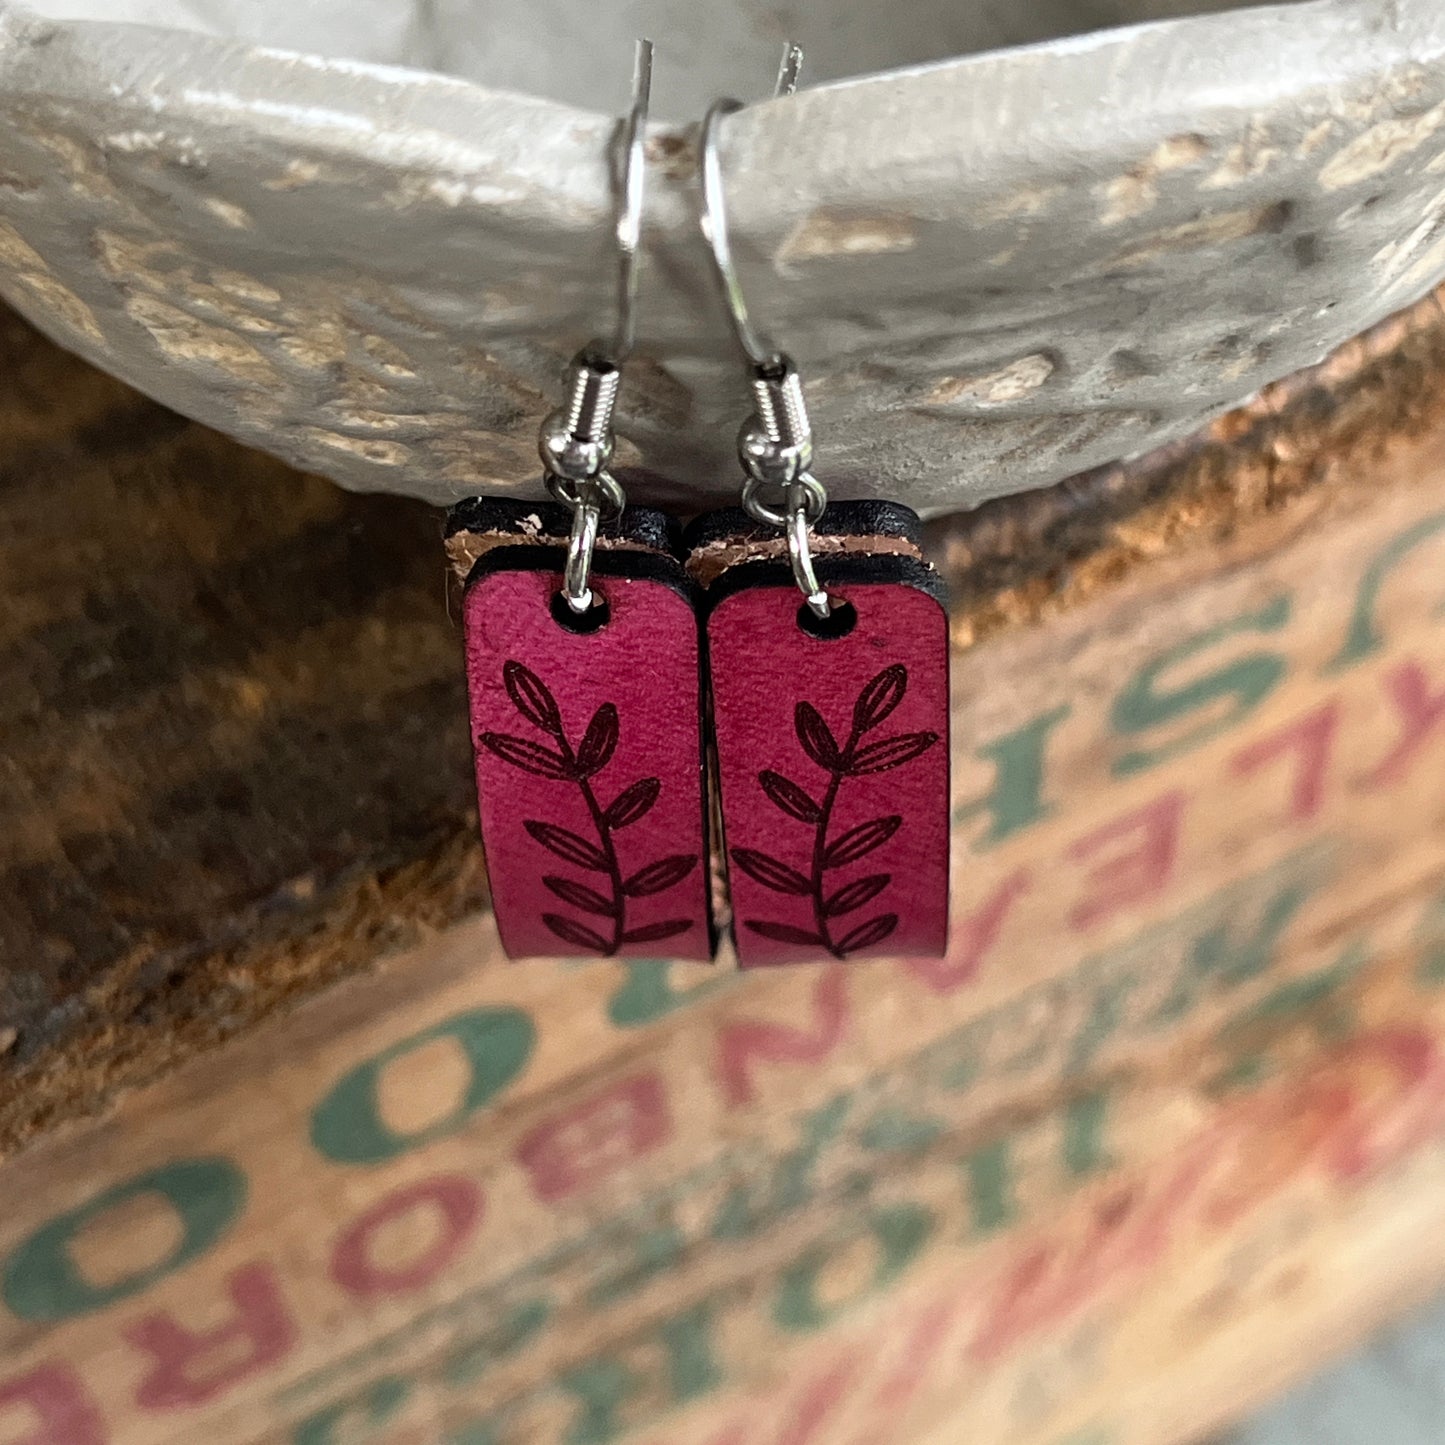 Boho Pink Leather Engraved Earrings with Leaf Design, Modern Loop Earrings